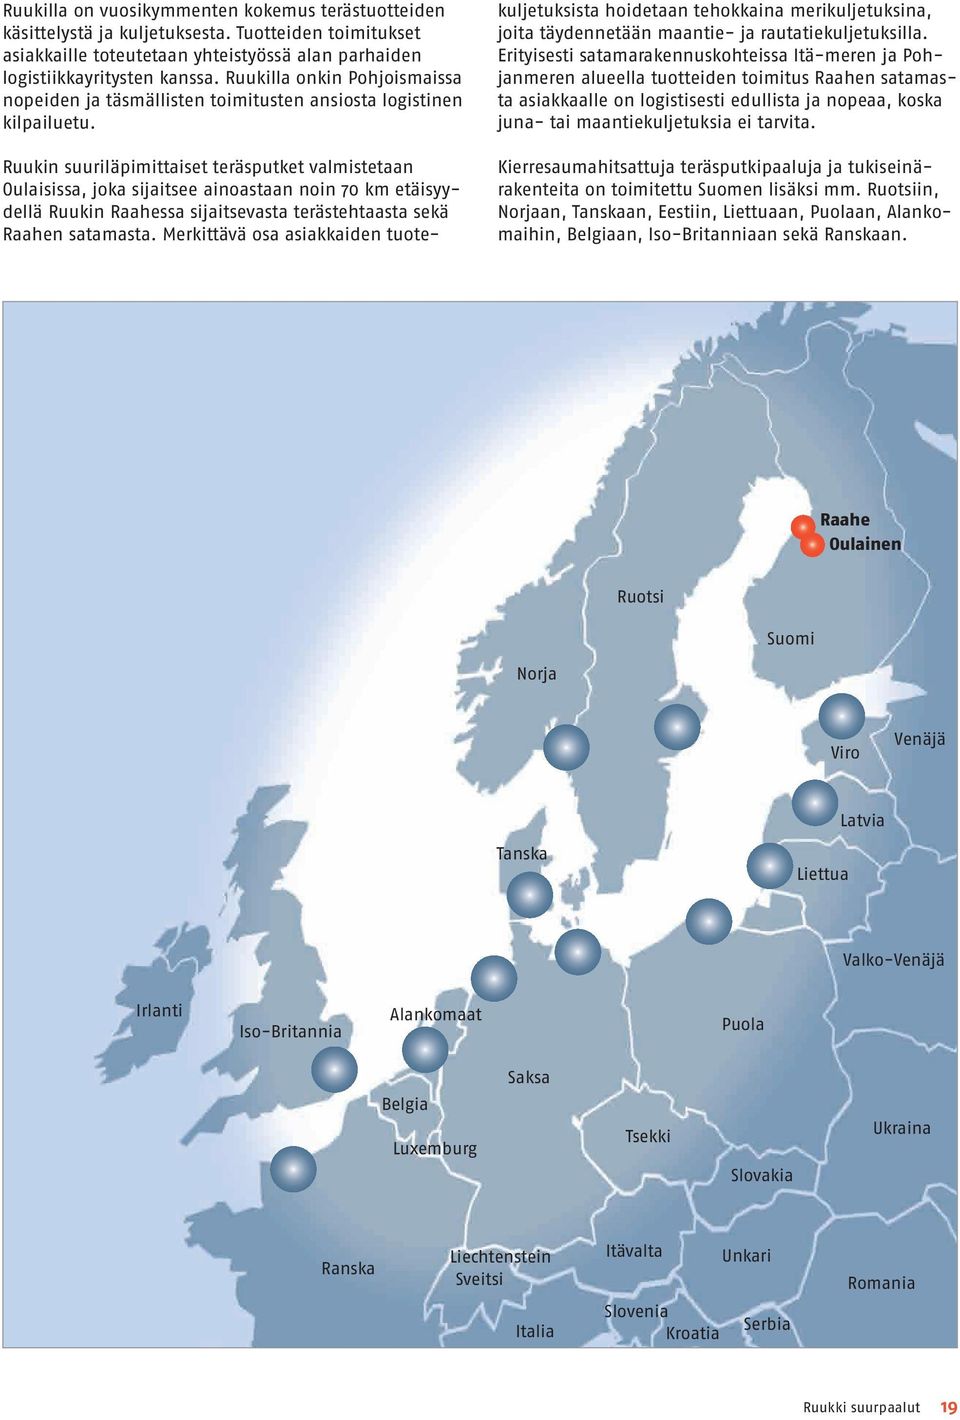 Ruukin suuriläpimittaiset teräsputket valmistetaan Oulaisissa, joka sijaitsee ainoastaan noin 70 km etäisyydellä Ruukin Raahessa sijaitsevasta terästehtaasta sekä Raahen satamasta.